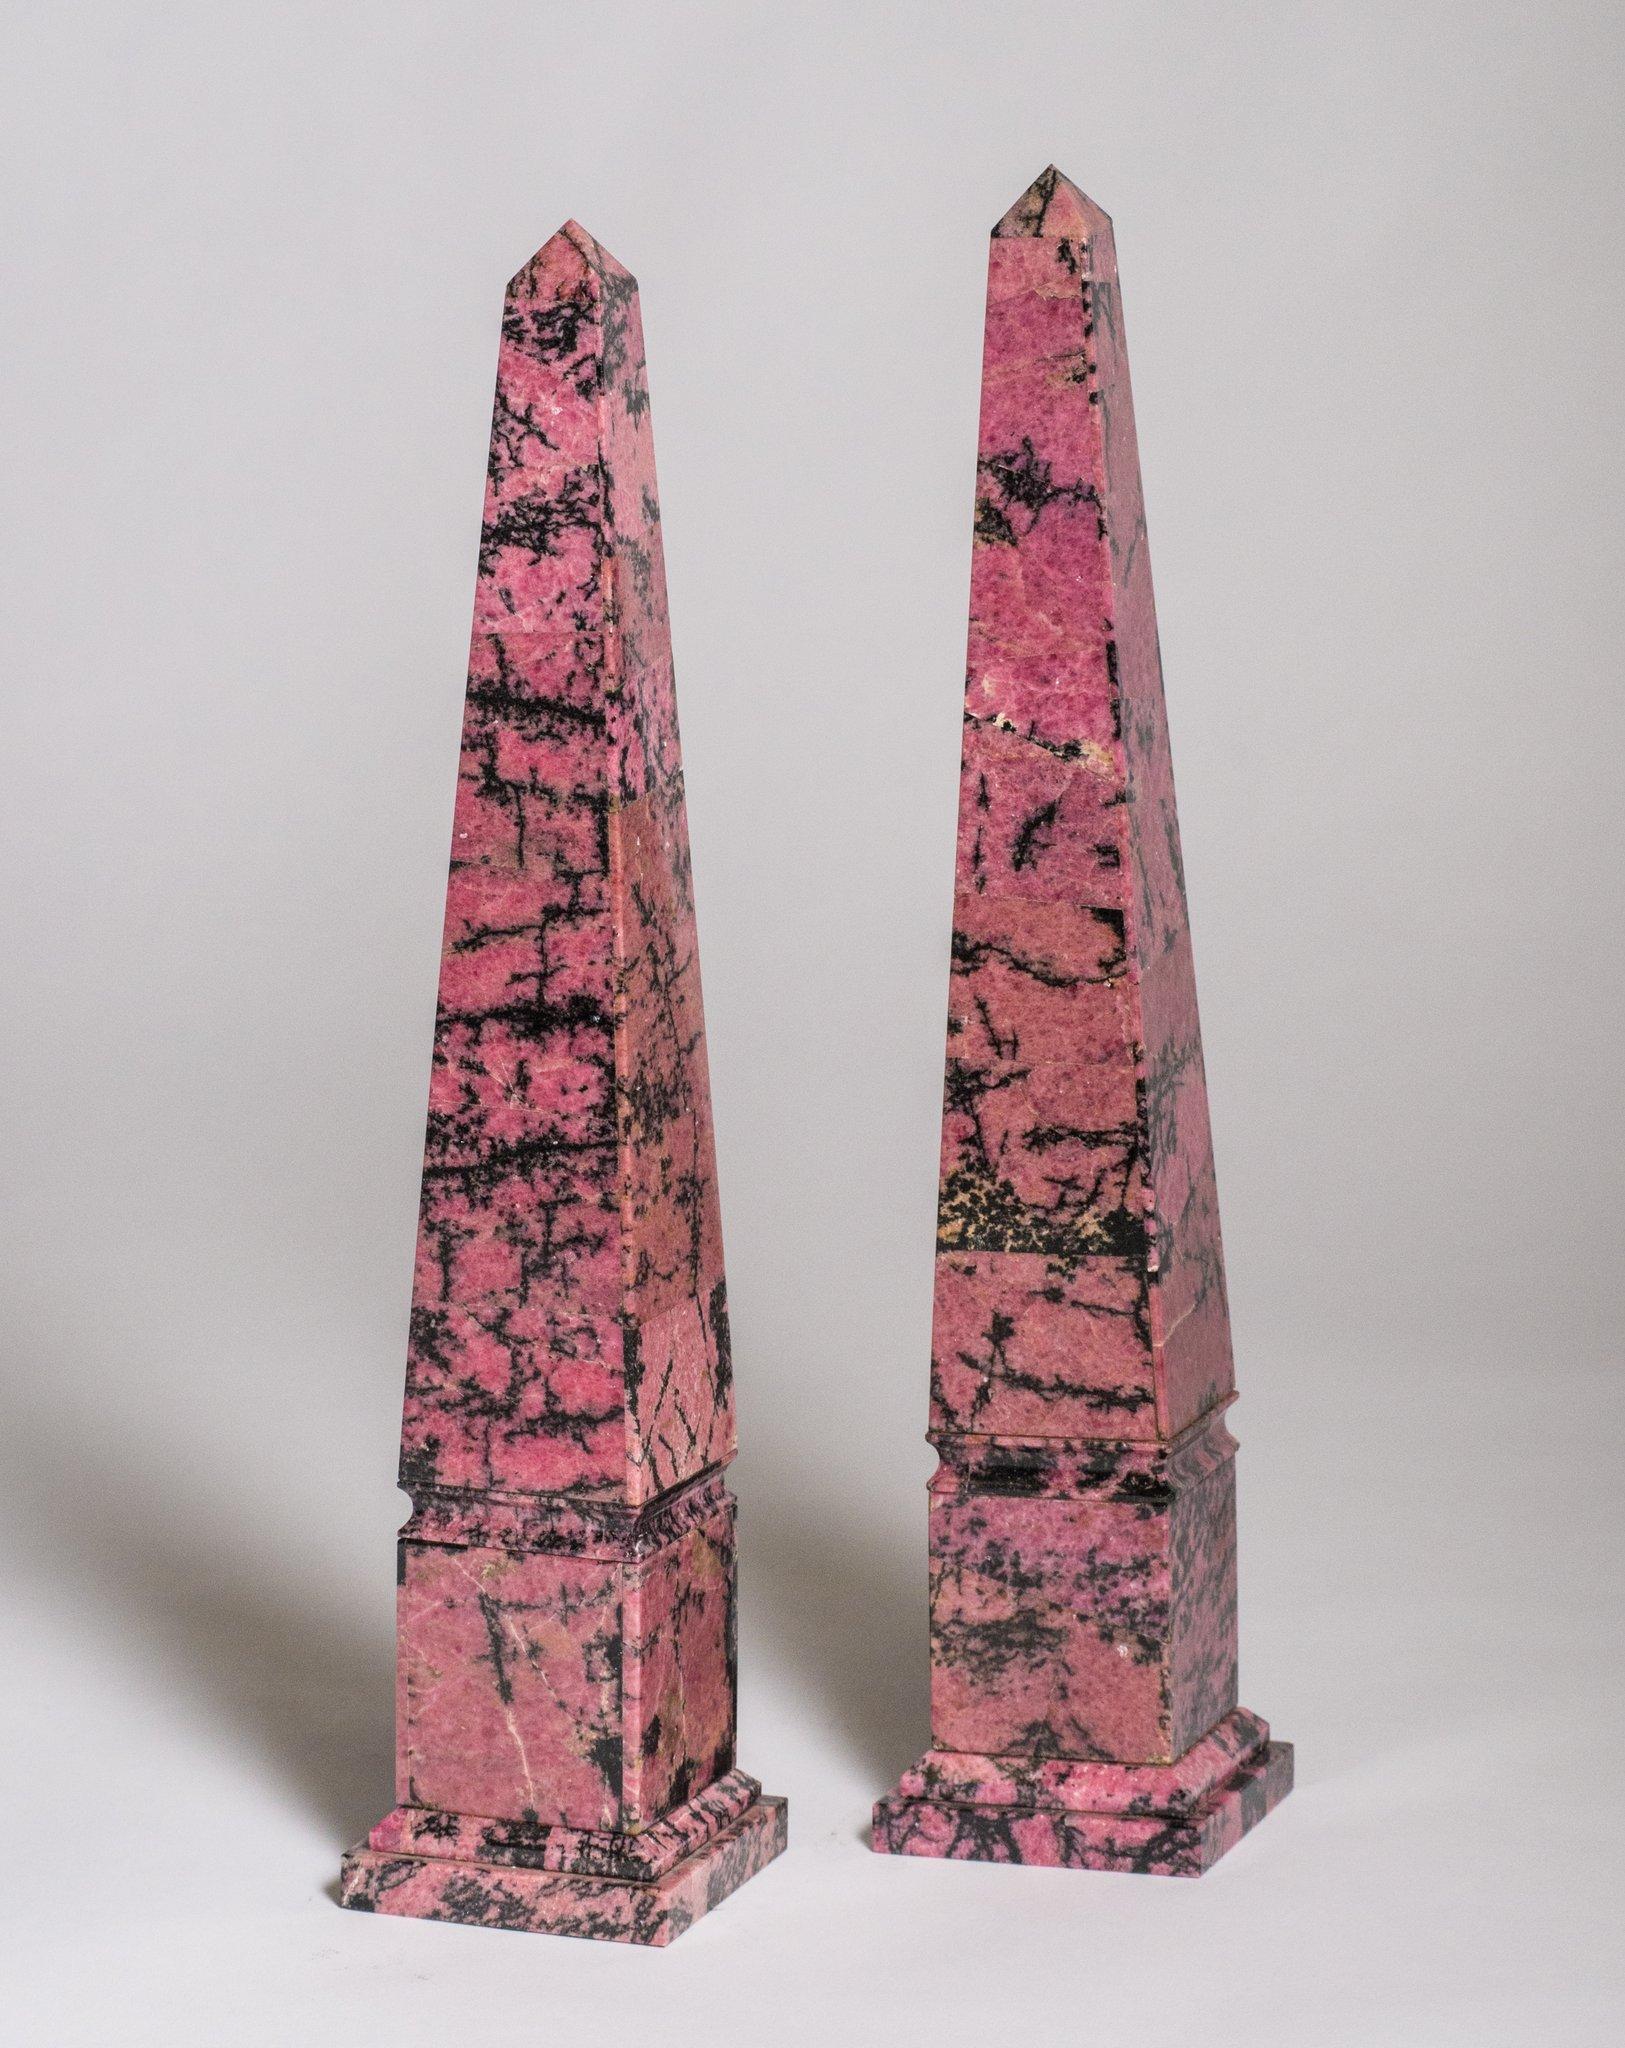 Dieses spektakuläre Obeliskenpaar ist aus Rhodonit gefertigt, einem Naturstein, der von dem Wort rhodon abstammt, das im Griechischen Rose